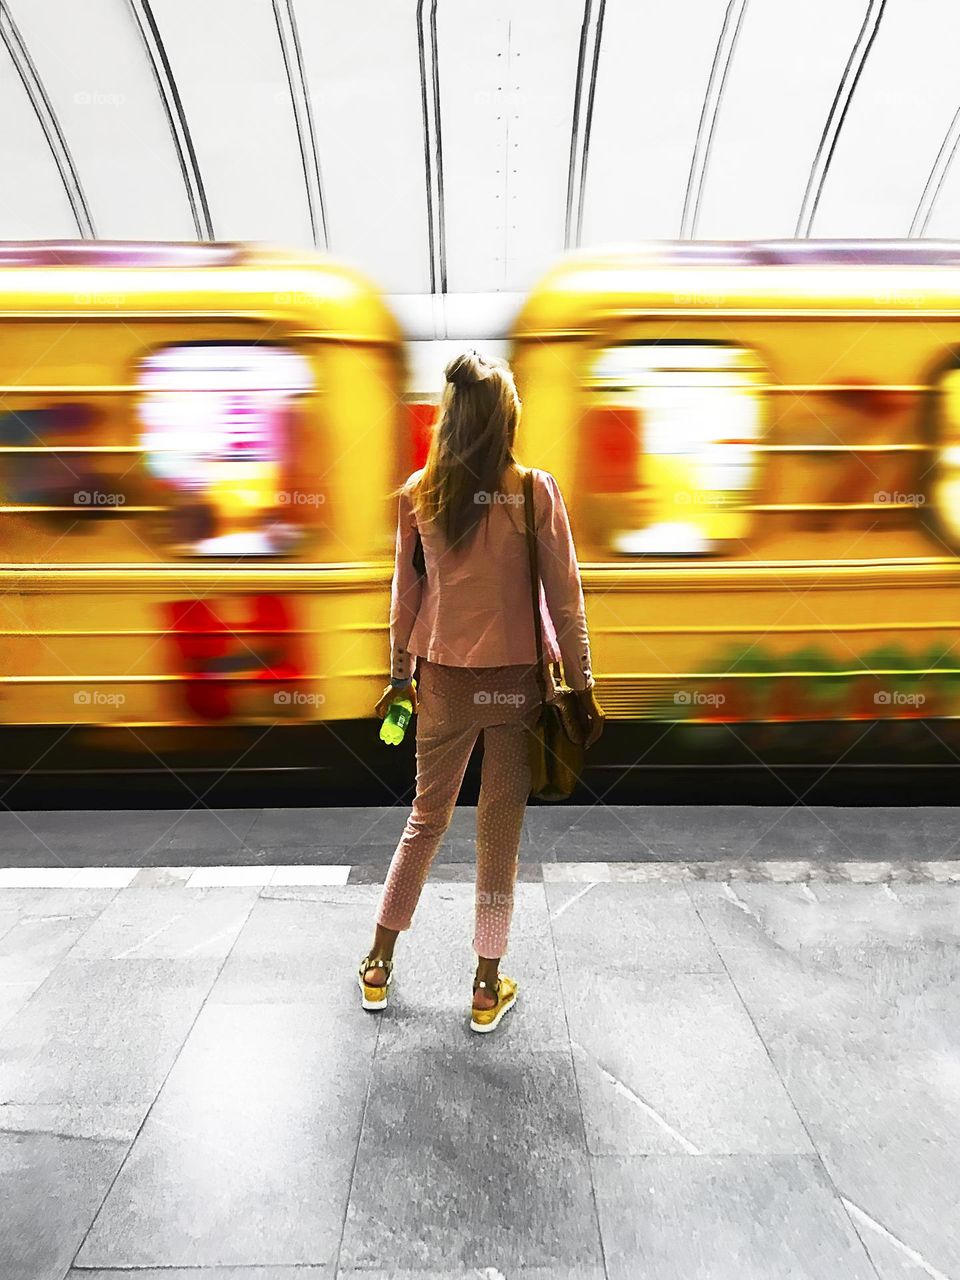 Yellow subway train 